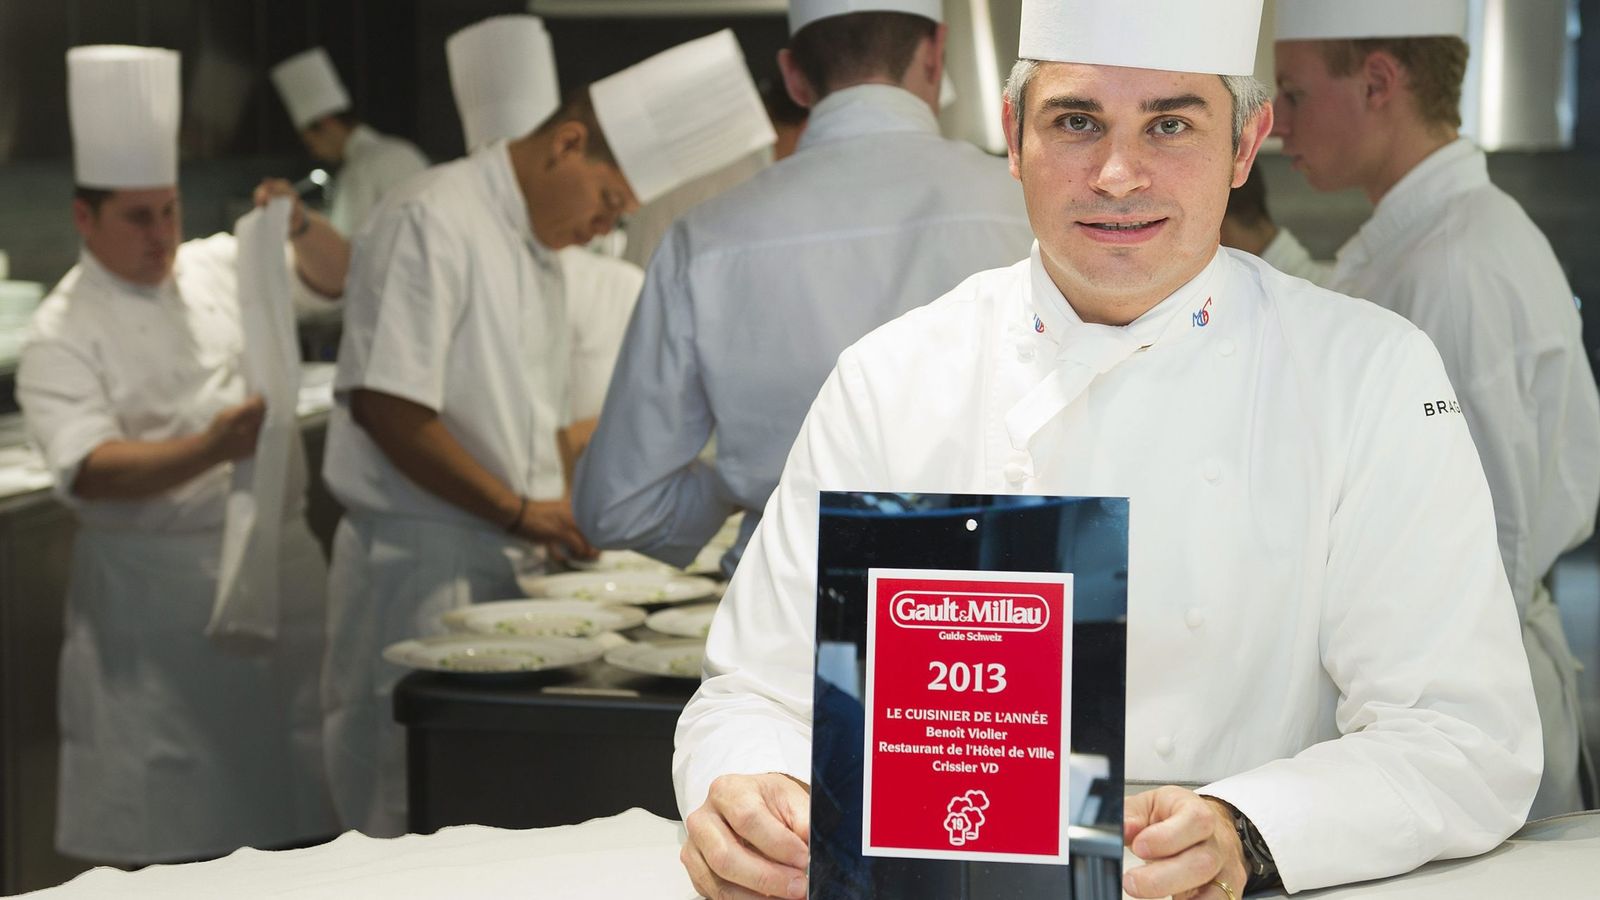 Foto: Benoît Violier, el mejor chef del mundo, en una imagen de archivo (EFE)